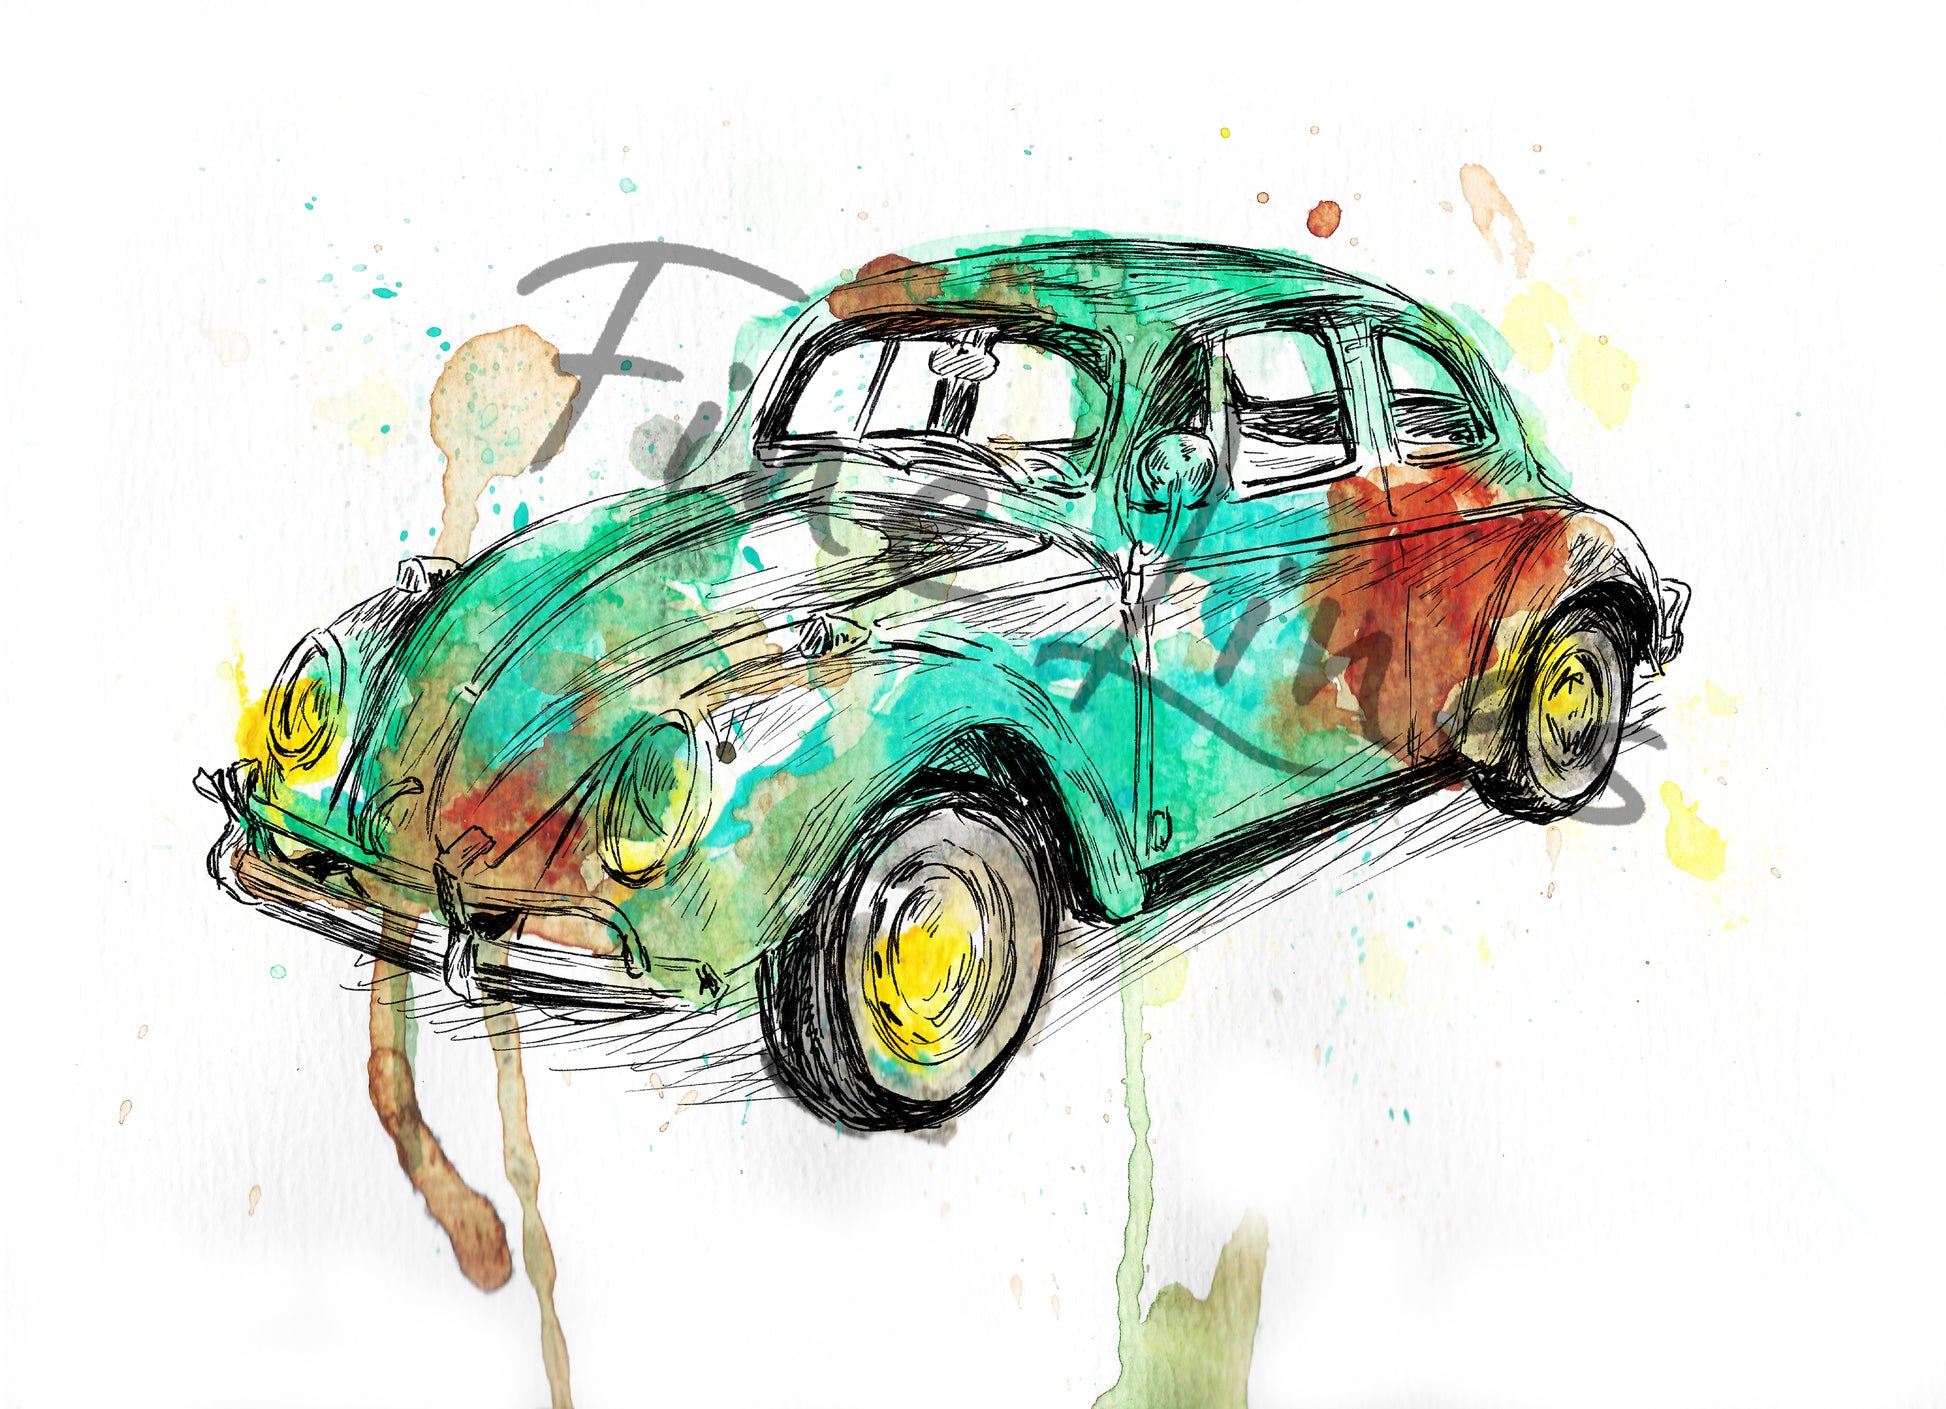 תמונה צבעונית להדפסה ומיסגור מכונית חיפושית עתיקה - rachelsfinelines